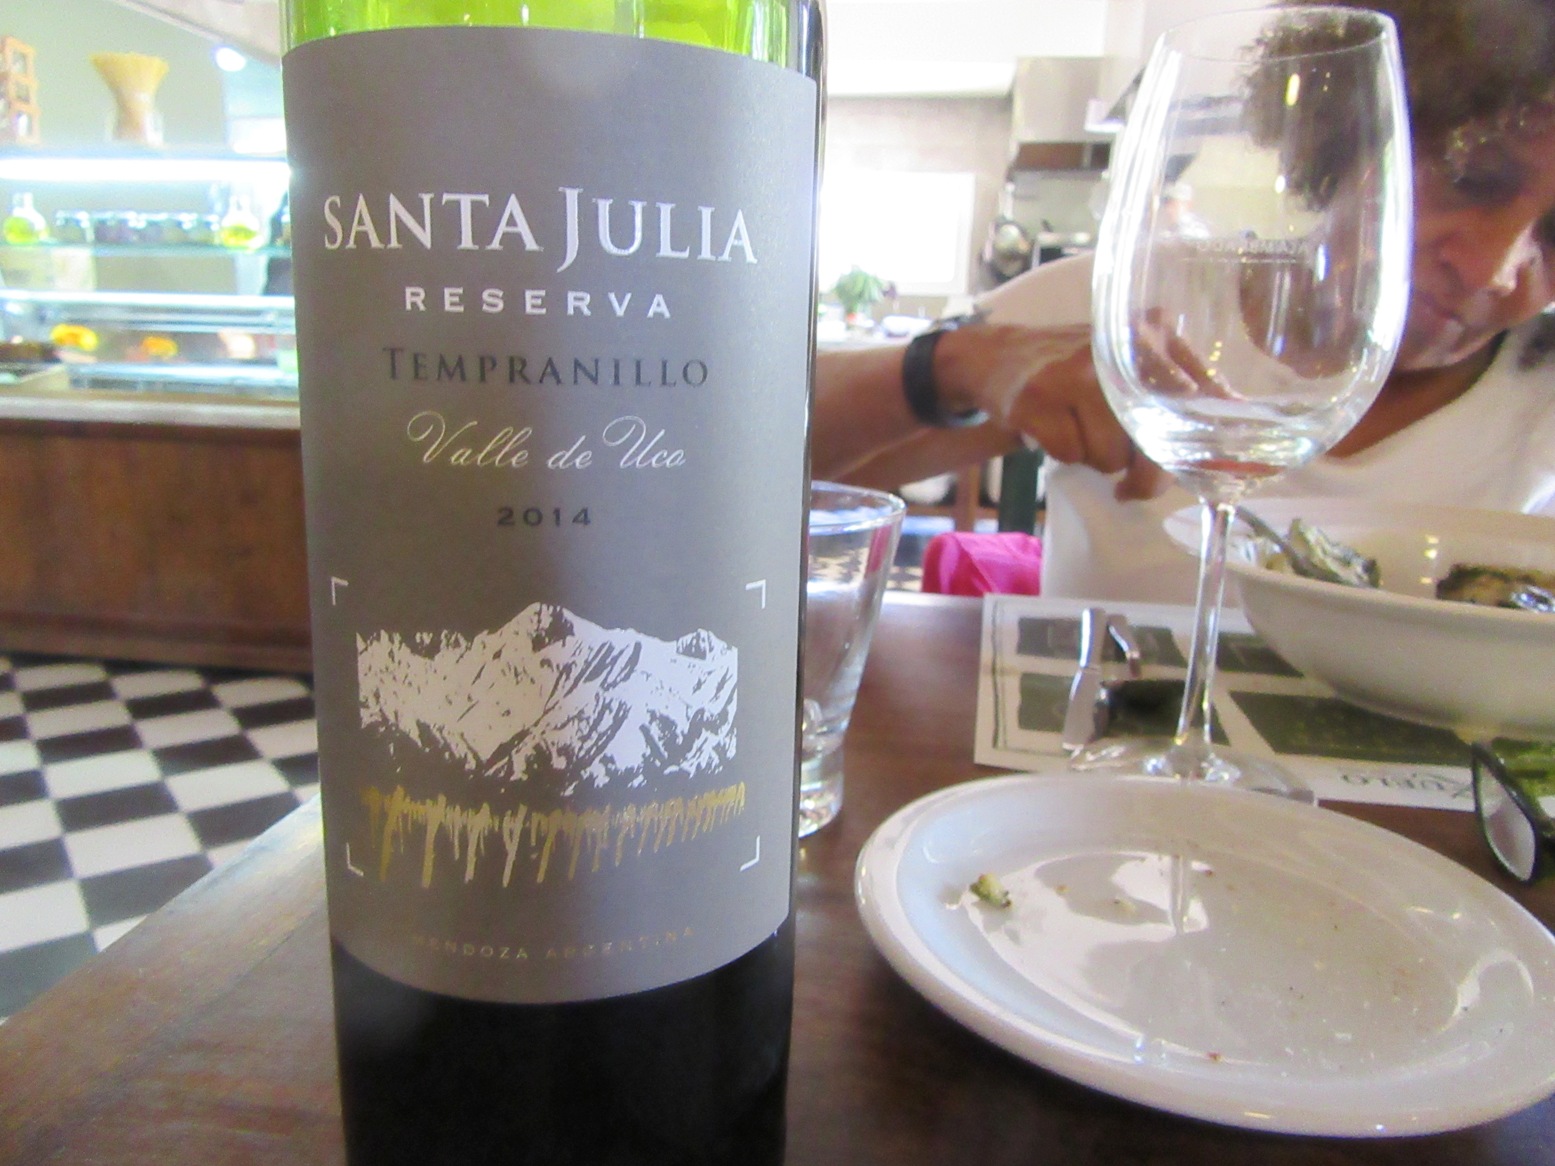 Zuccardi, Santa Julia, Reserva Tempranillo 2014 Uco Valley, Mendoza, Argentina, Wine Casual